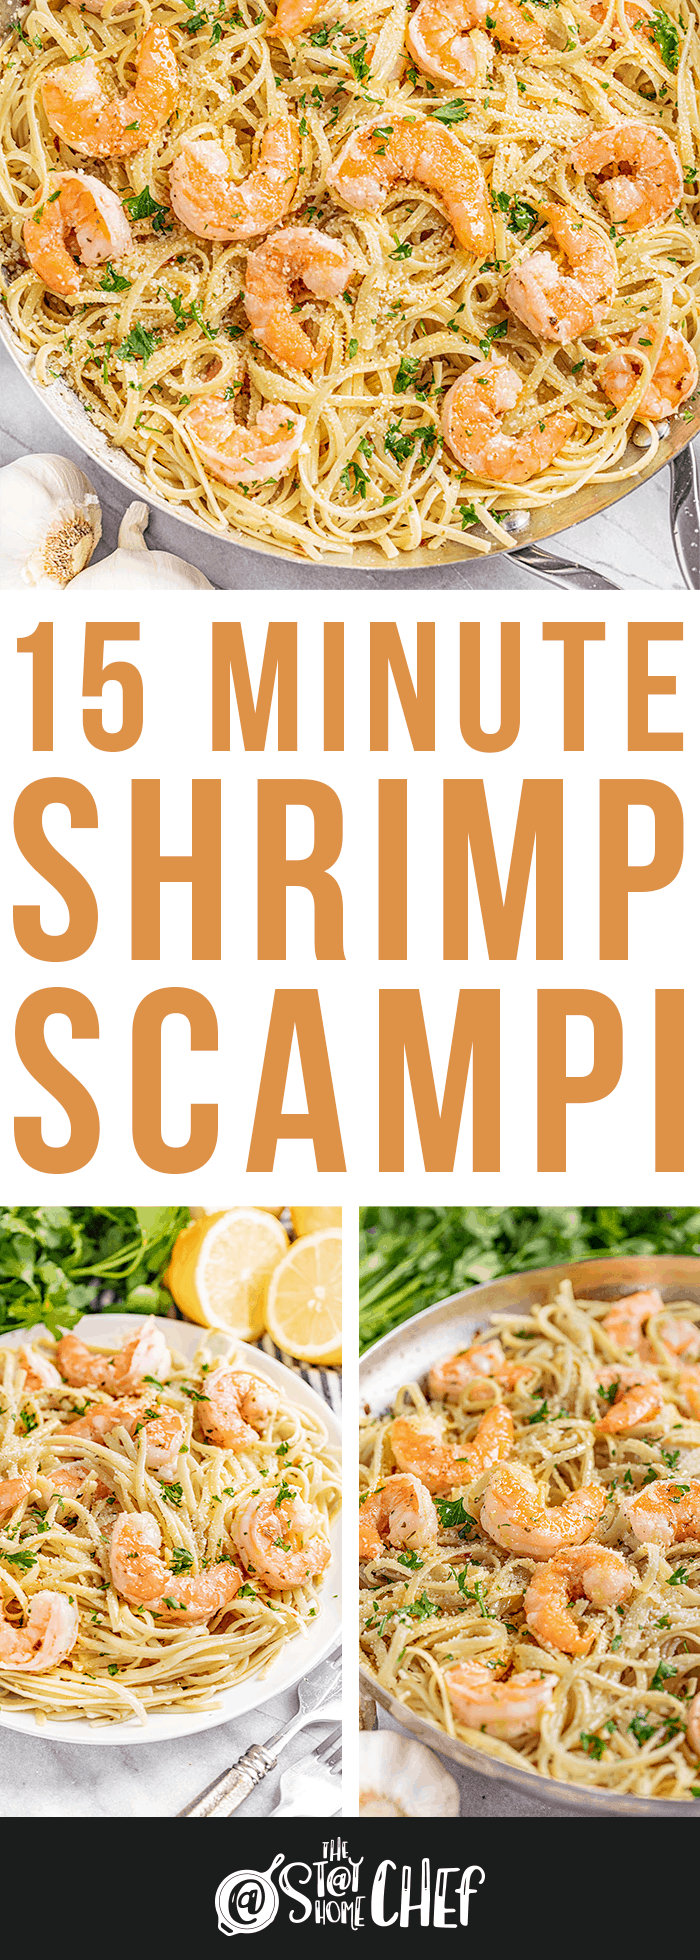 15 Minute Shrimp Scampi Pasta